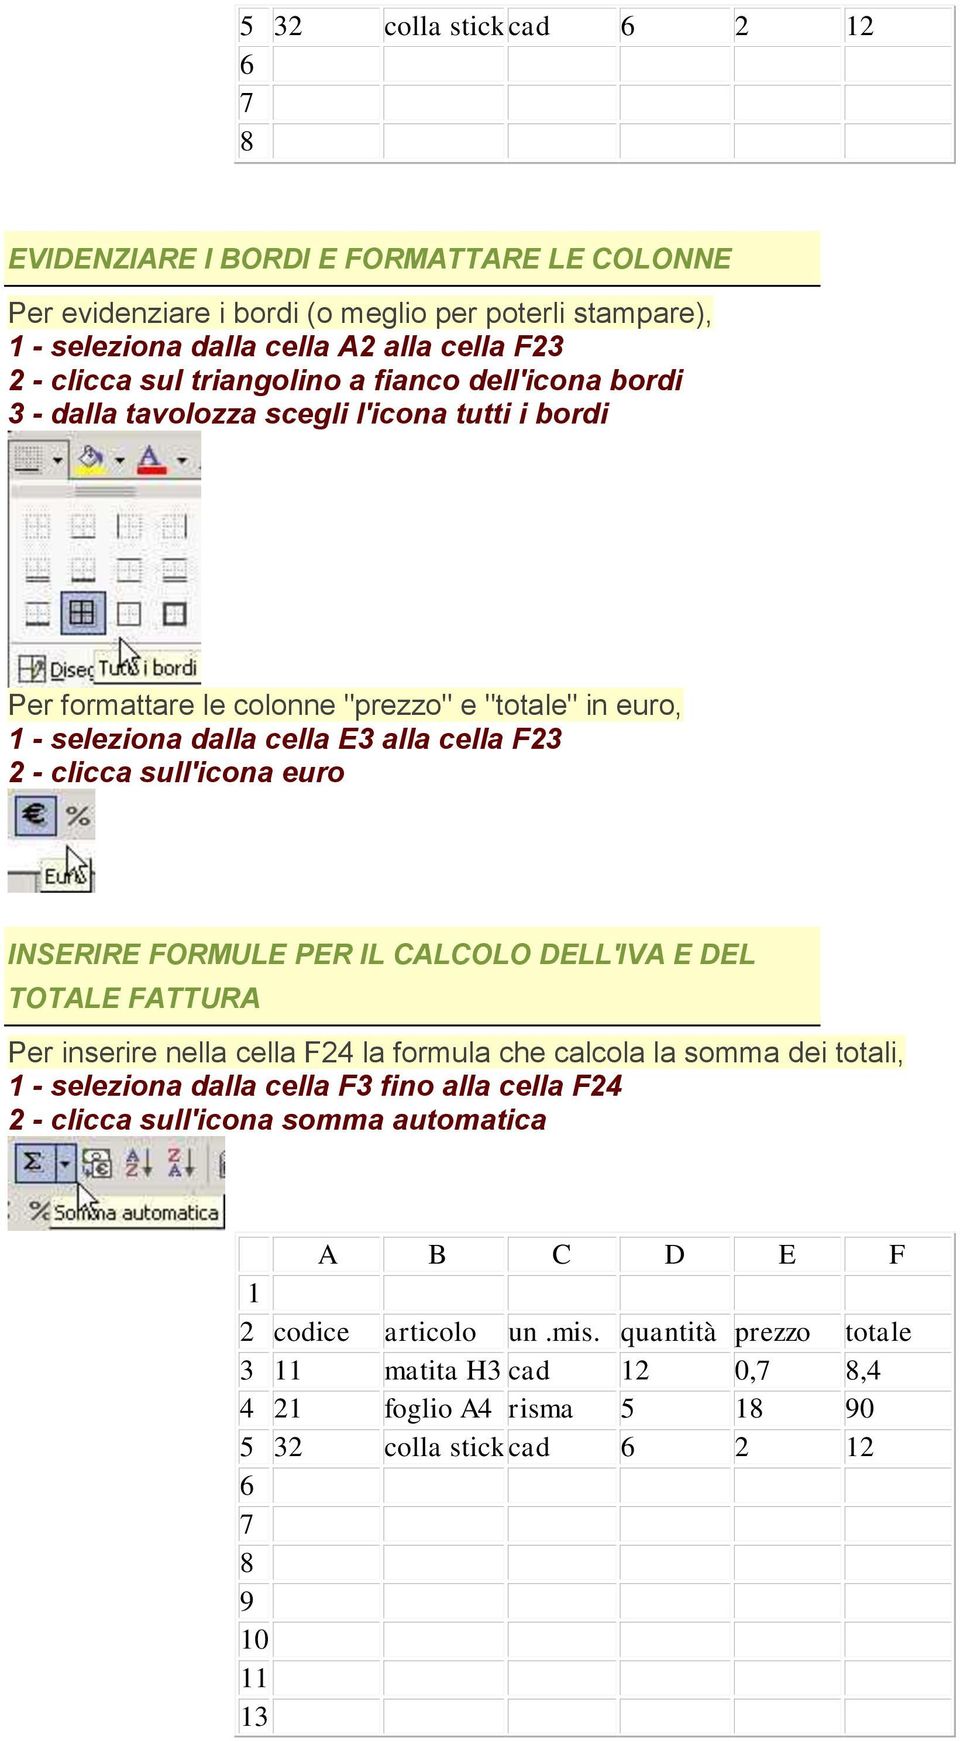 E3 alla cella F23 2 - clicca sull'icona euro INSERIRE FORMULE PER IL CALCOLO DELL'IVA E DEL TOTALE FATTURA Per inserire nella cella F24 la formula che calcola la somma dei